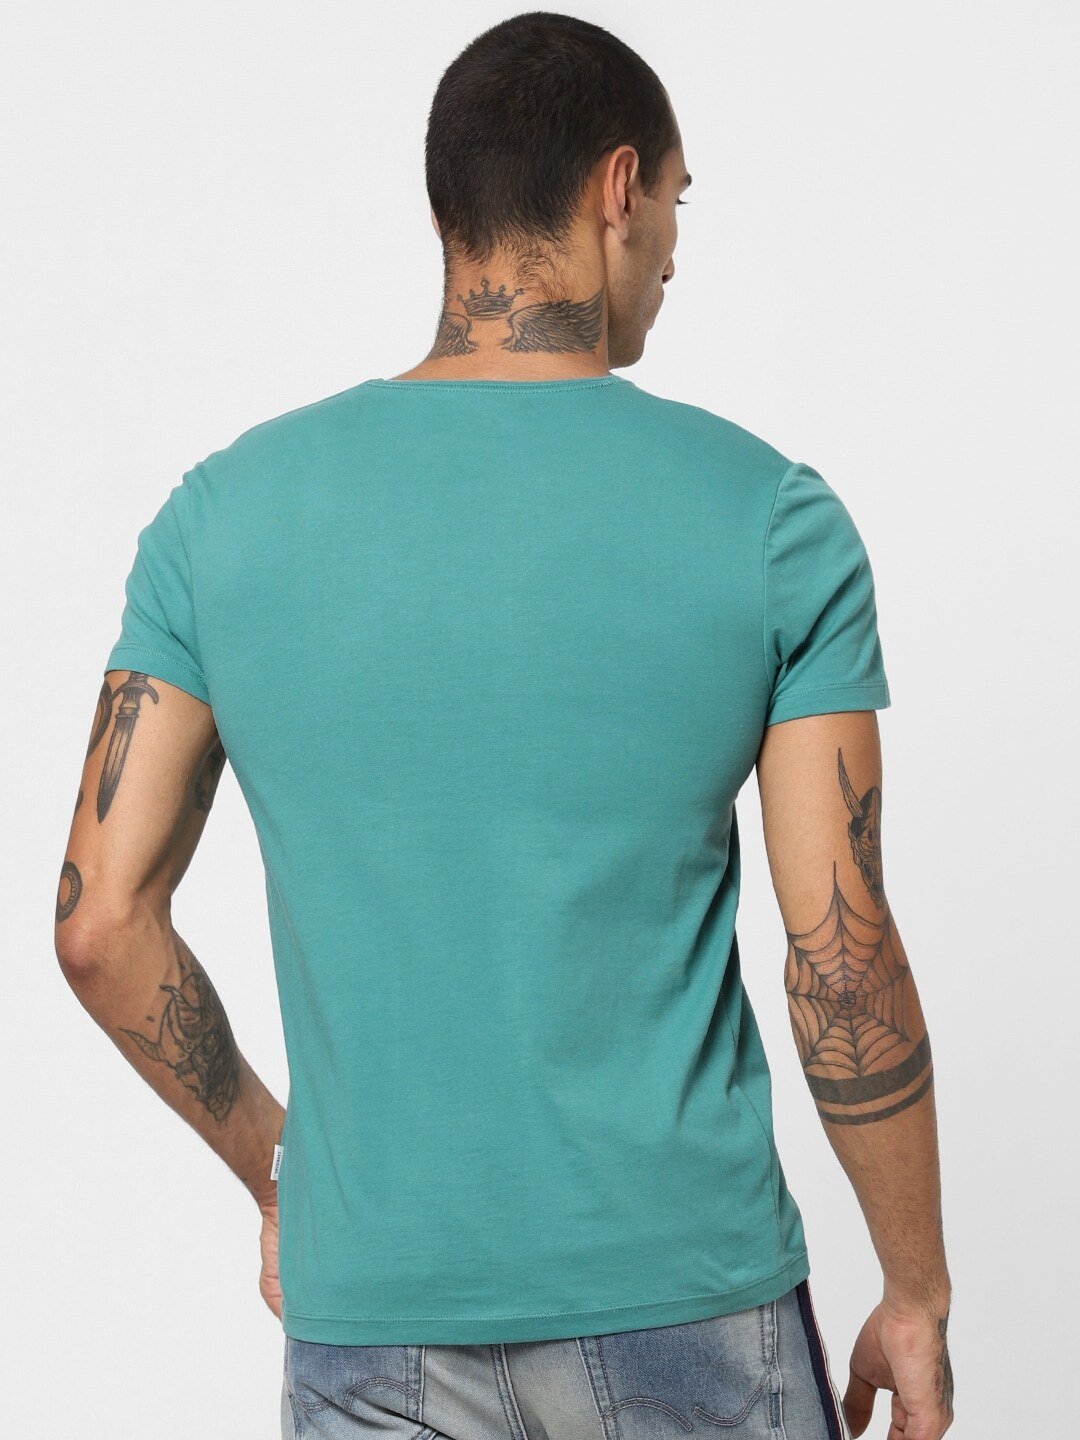 Jack Jones Core Men Turquoise Blue Solid Slim Fit V-Neck Pure Cotton T-shirt-2112447